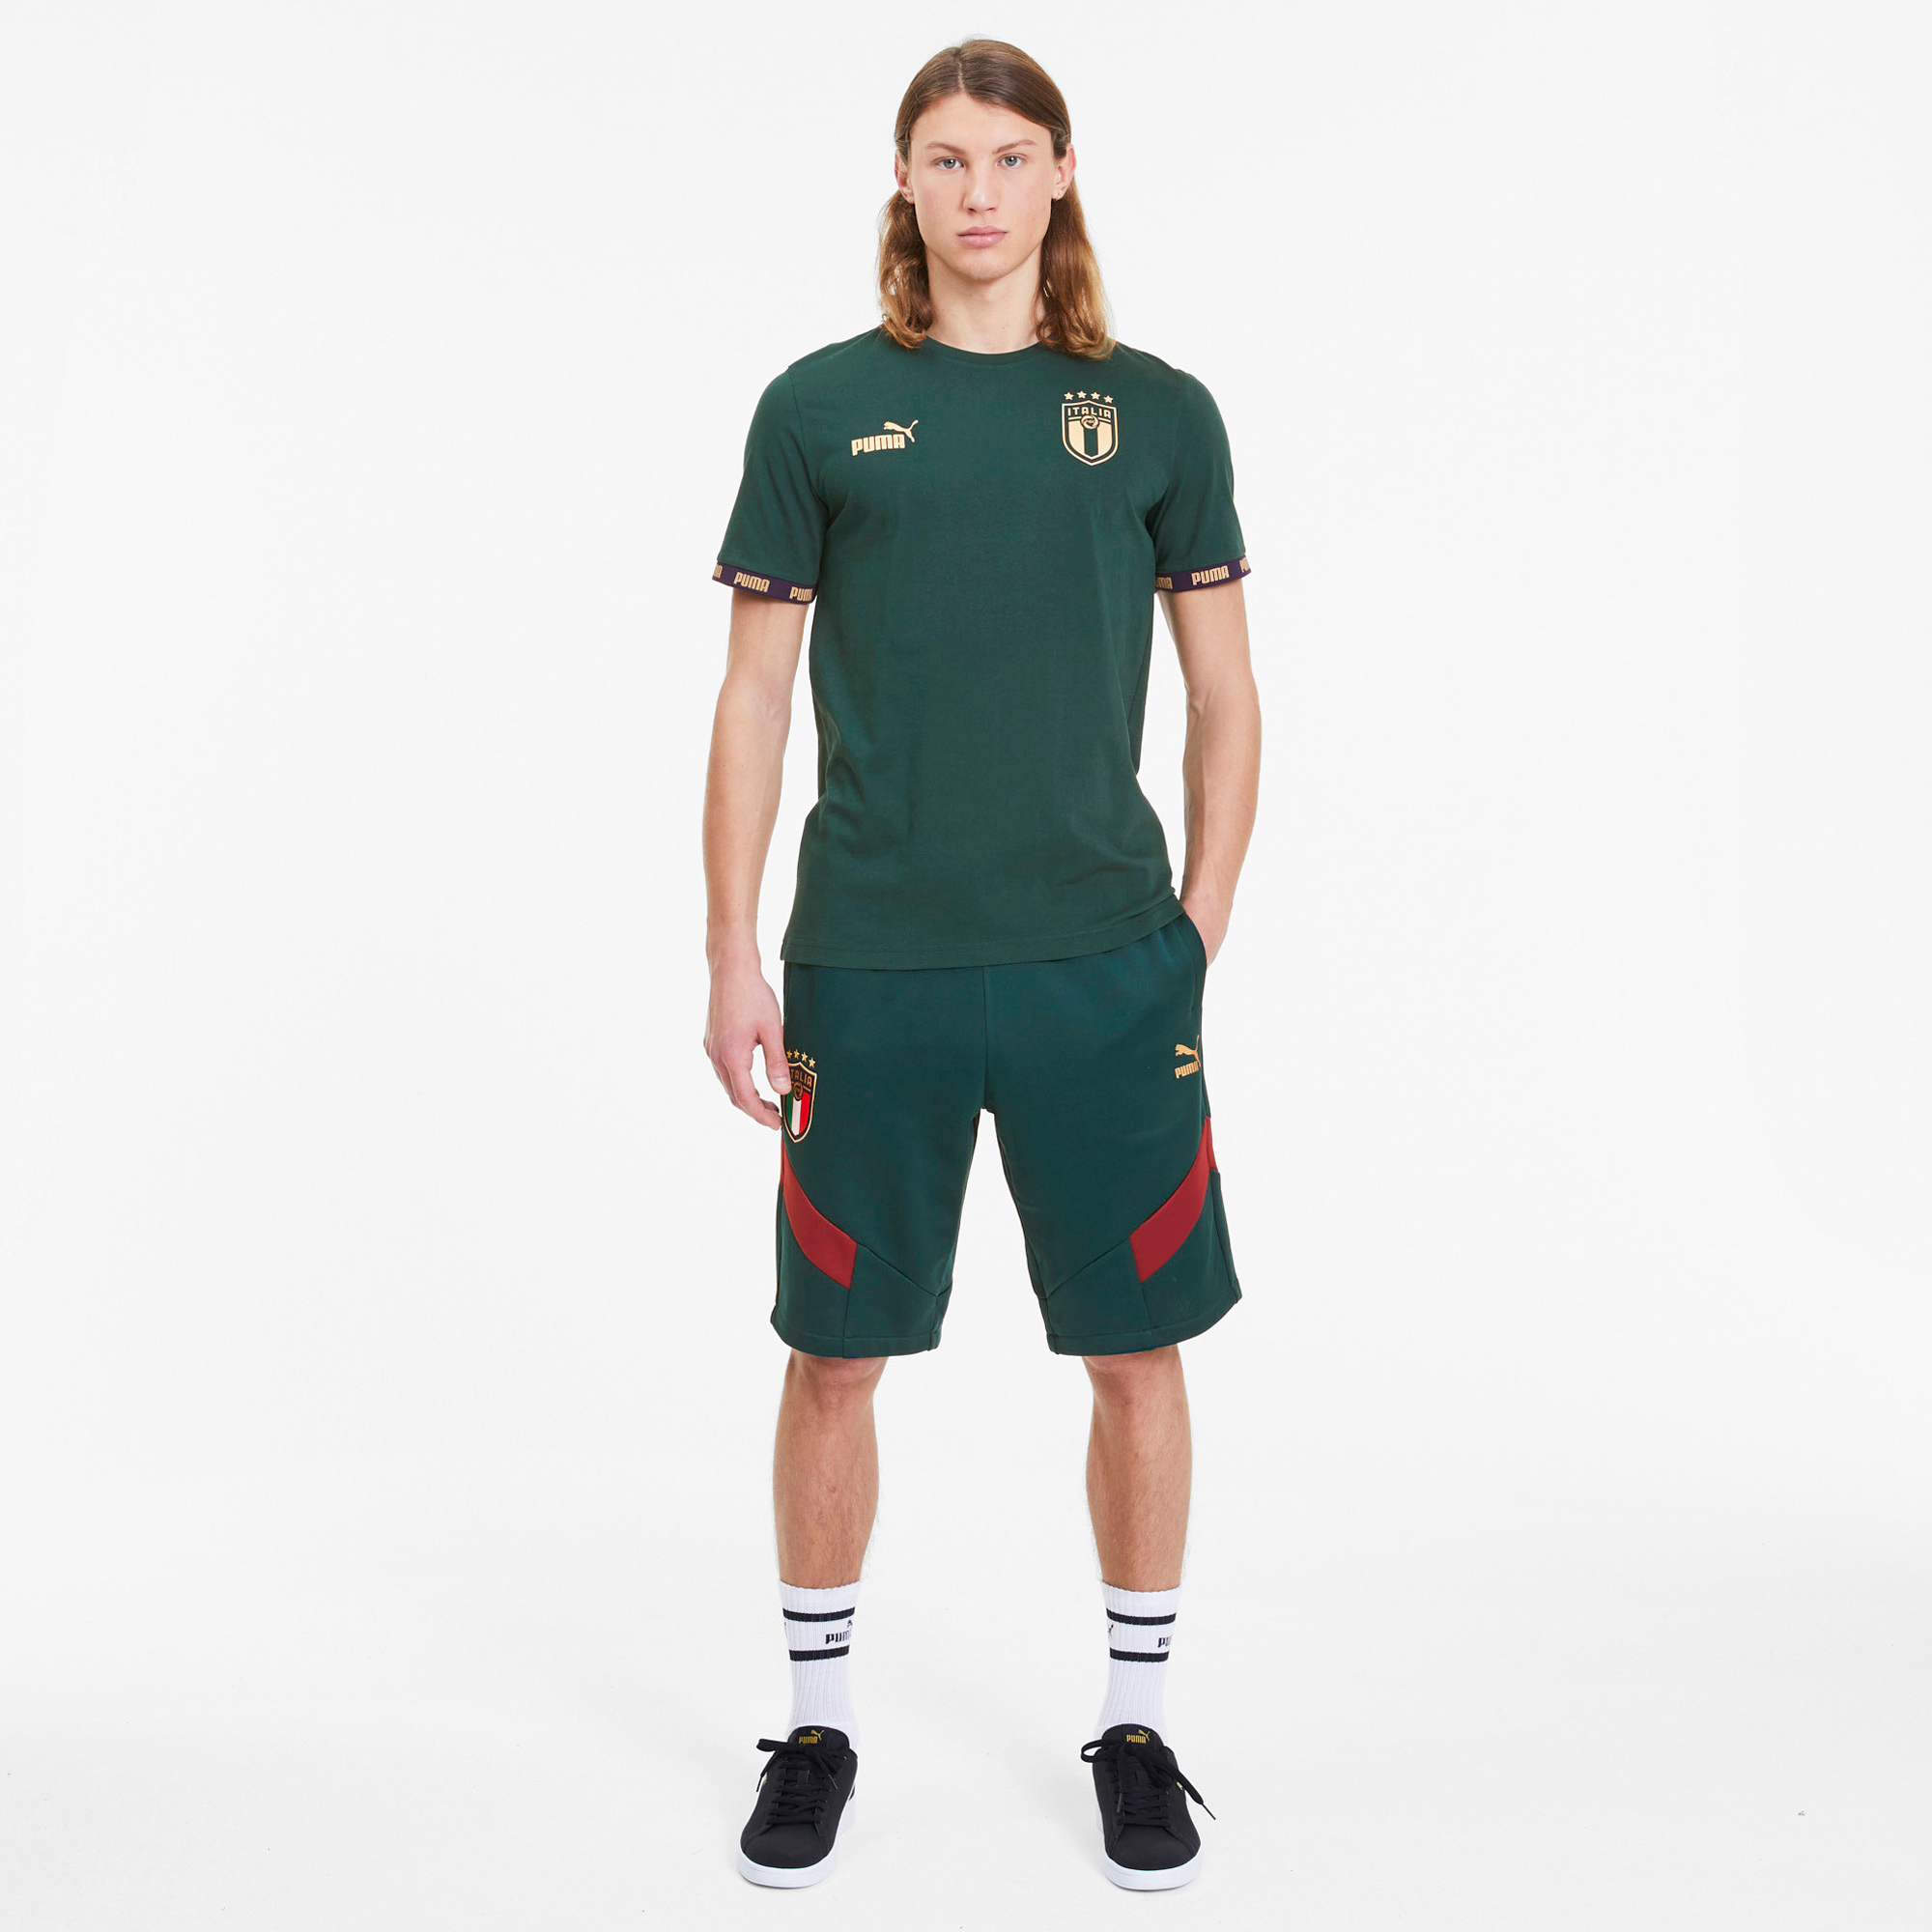 Áo thun puma tay ngắn in logo đội bóng đá Ý thời trang cao cấp cho nam